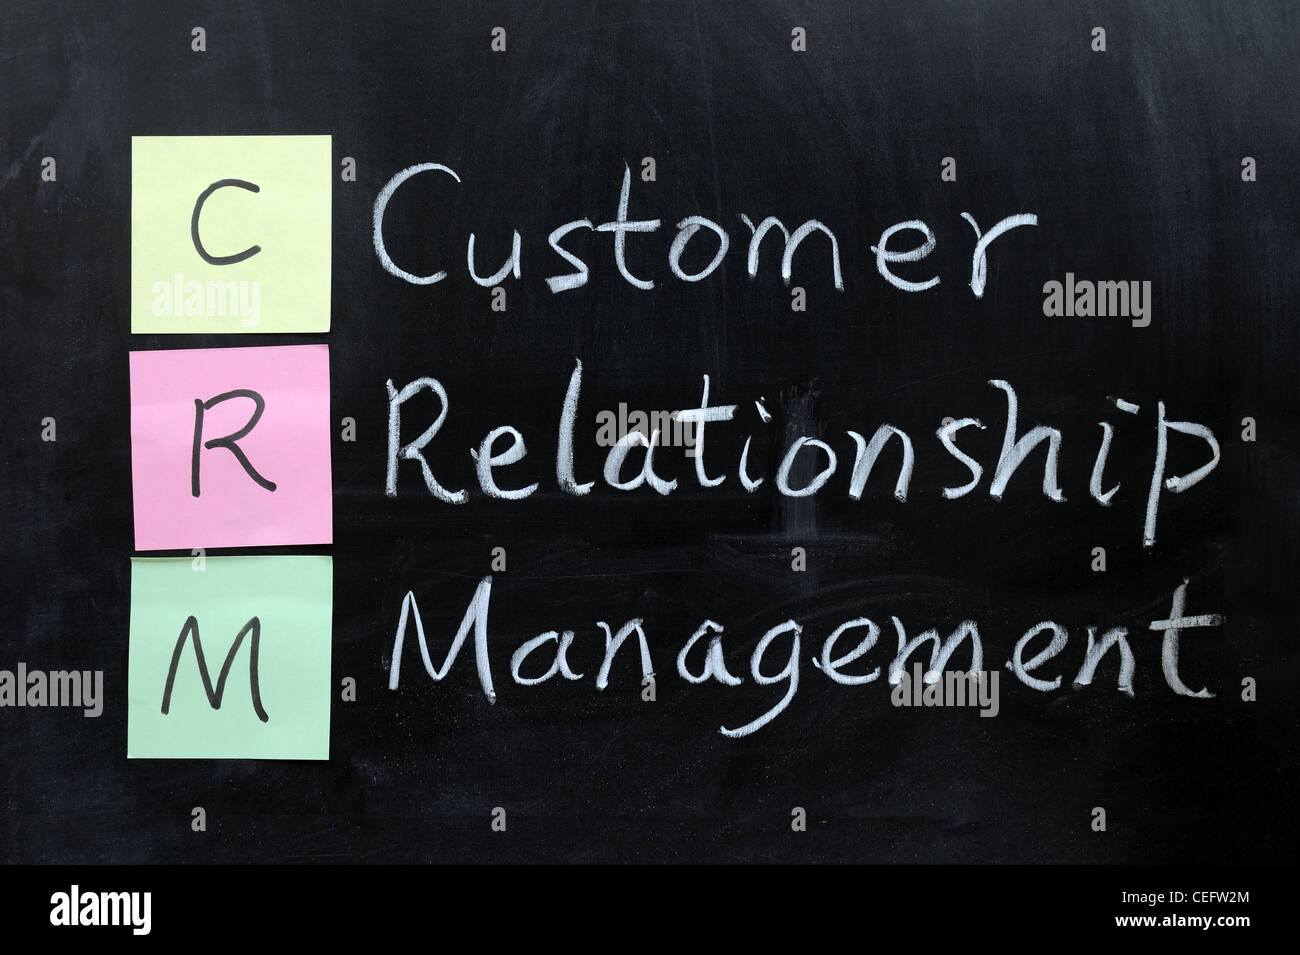 Kreide-Zeichnung - CRM, Customer Relationship Management Stockfoto